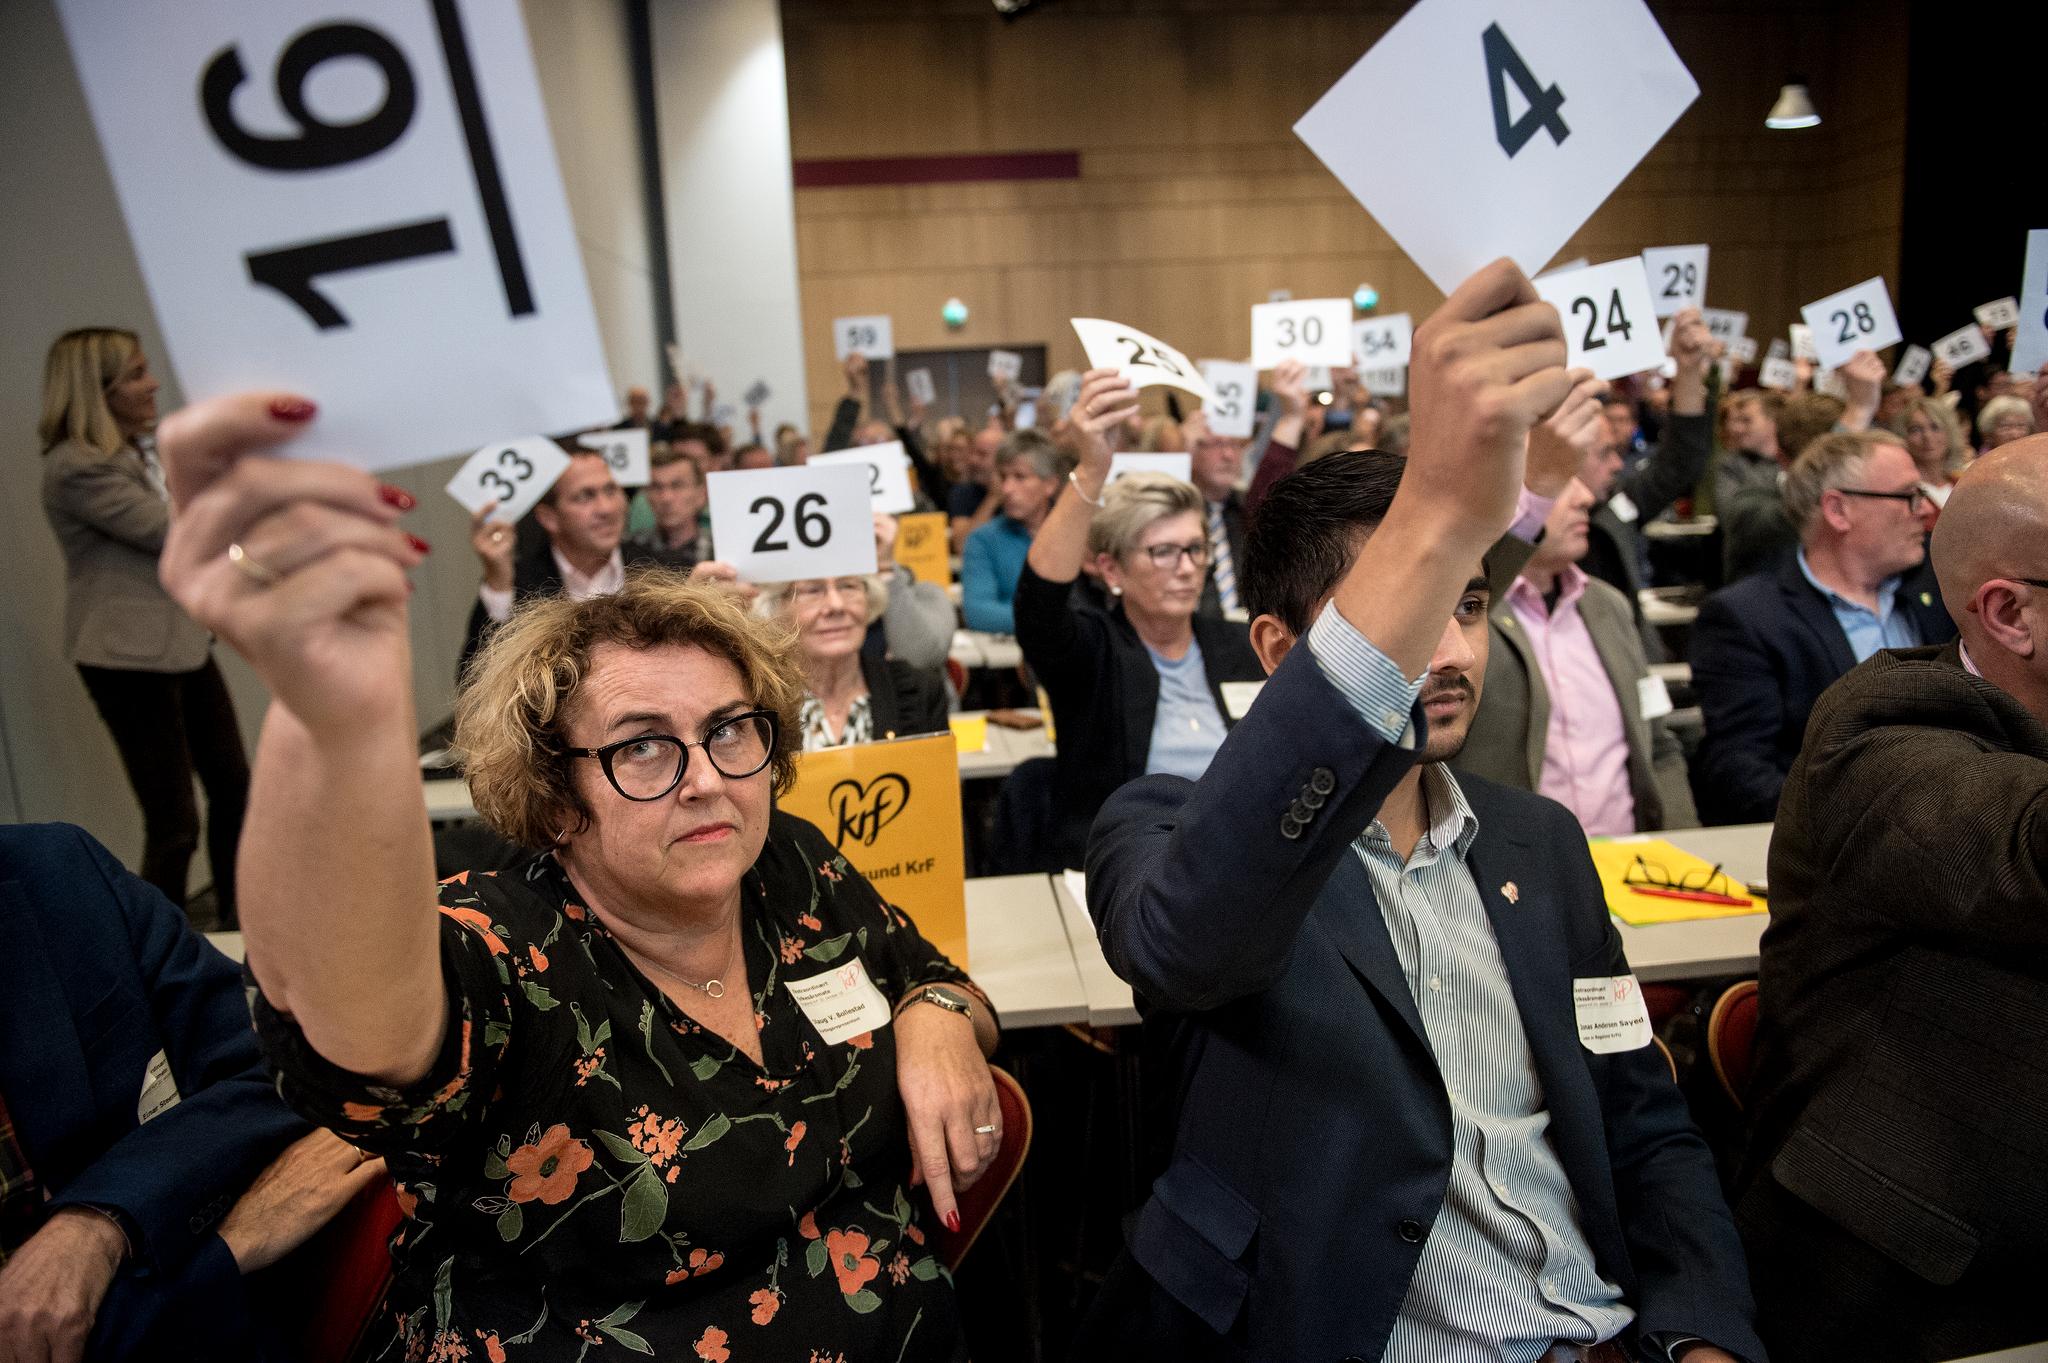 I Rogaland KrF valgte flertallet å sendte en delegasjon til landsmøtet som bare representerte deres syn. Bare én av 16 utsendinger derfra vil derfor støtte partilederens syn.